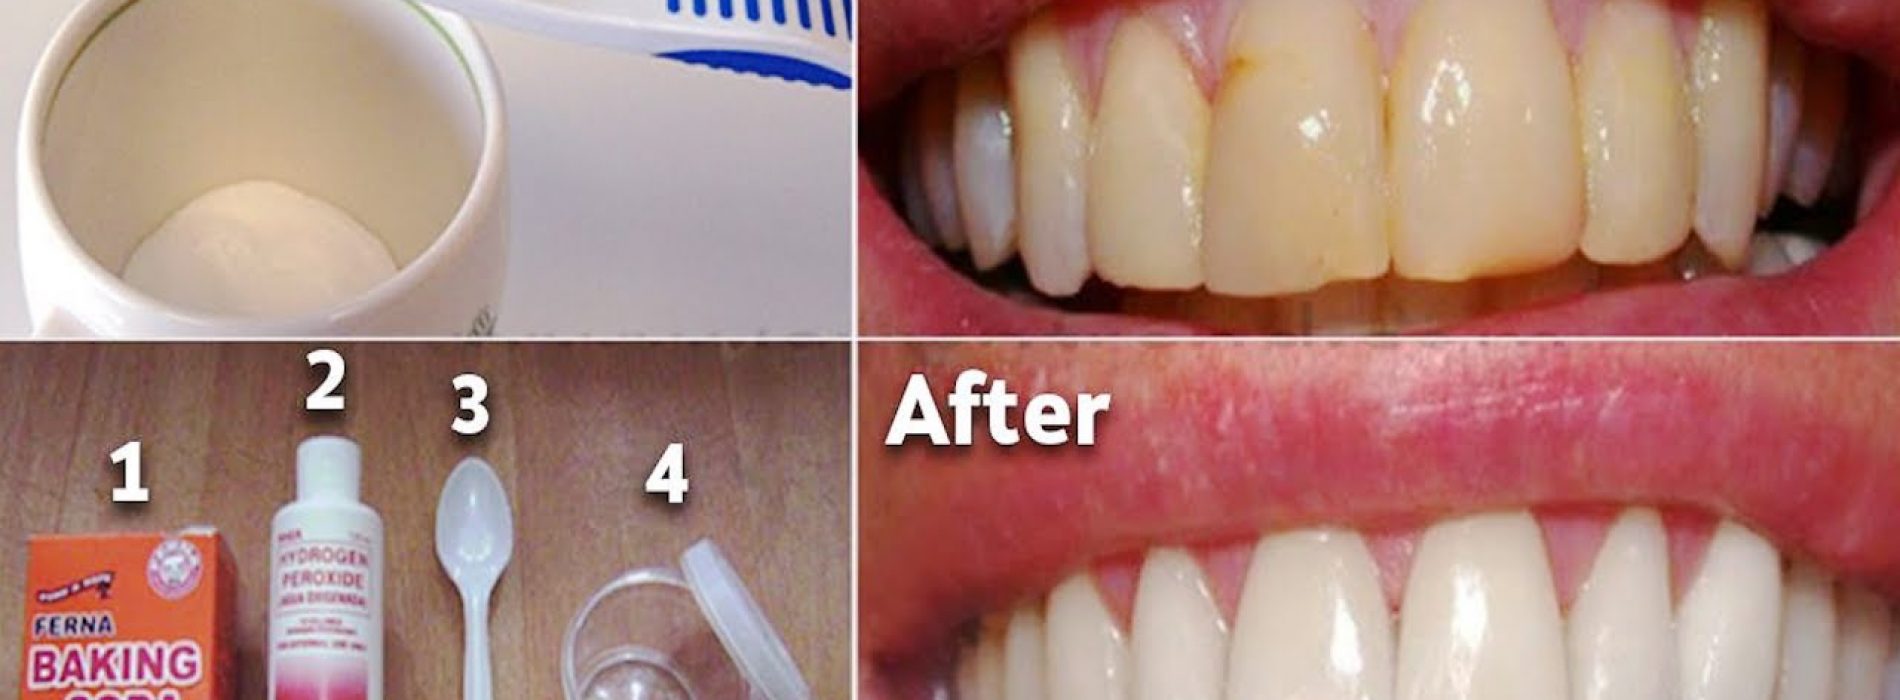 Dit mondwater verwijdert tandplak van tanden in 2 minuten